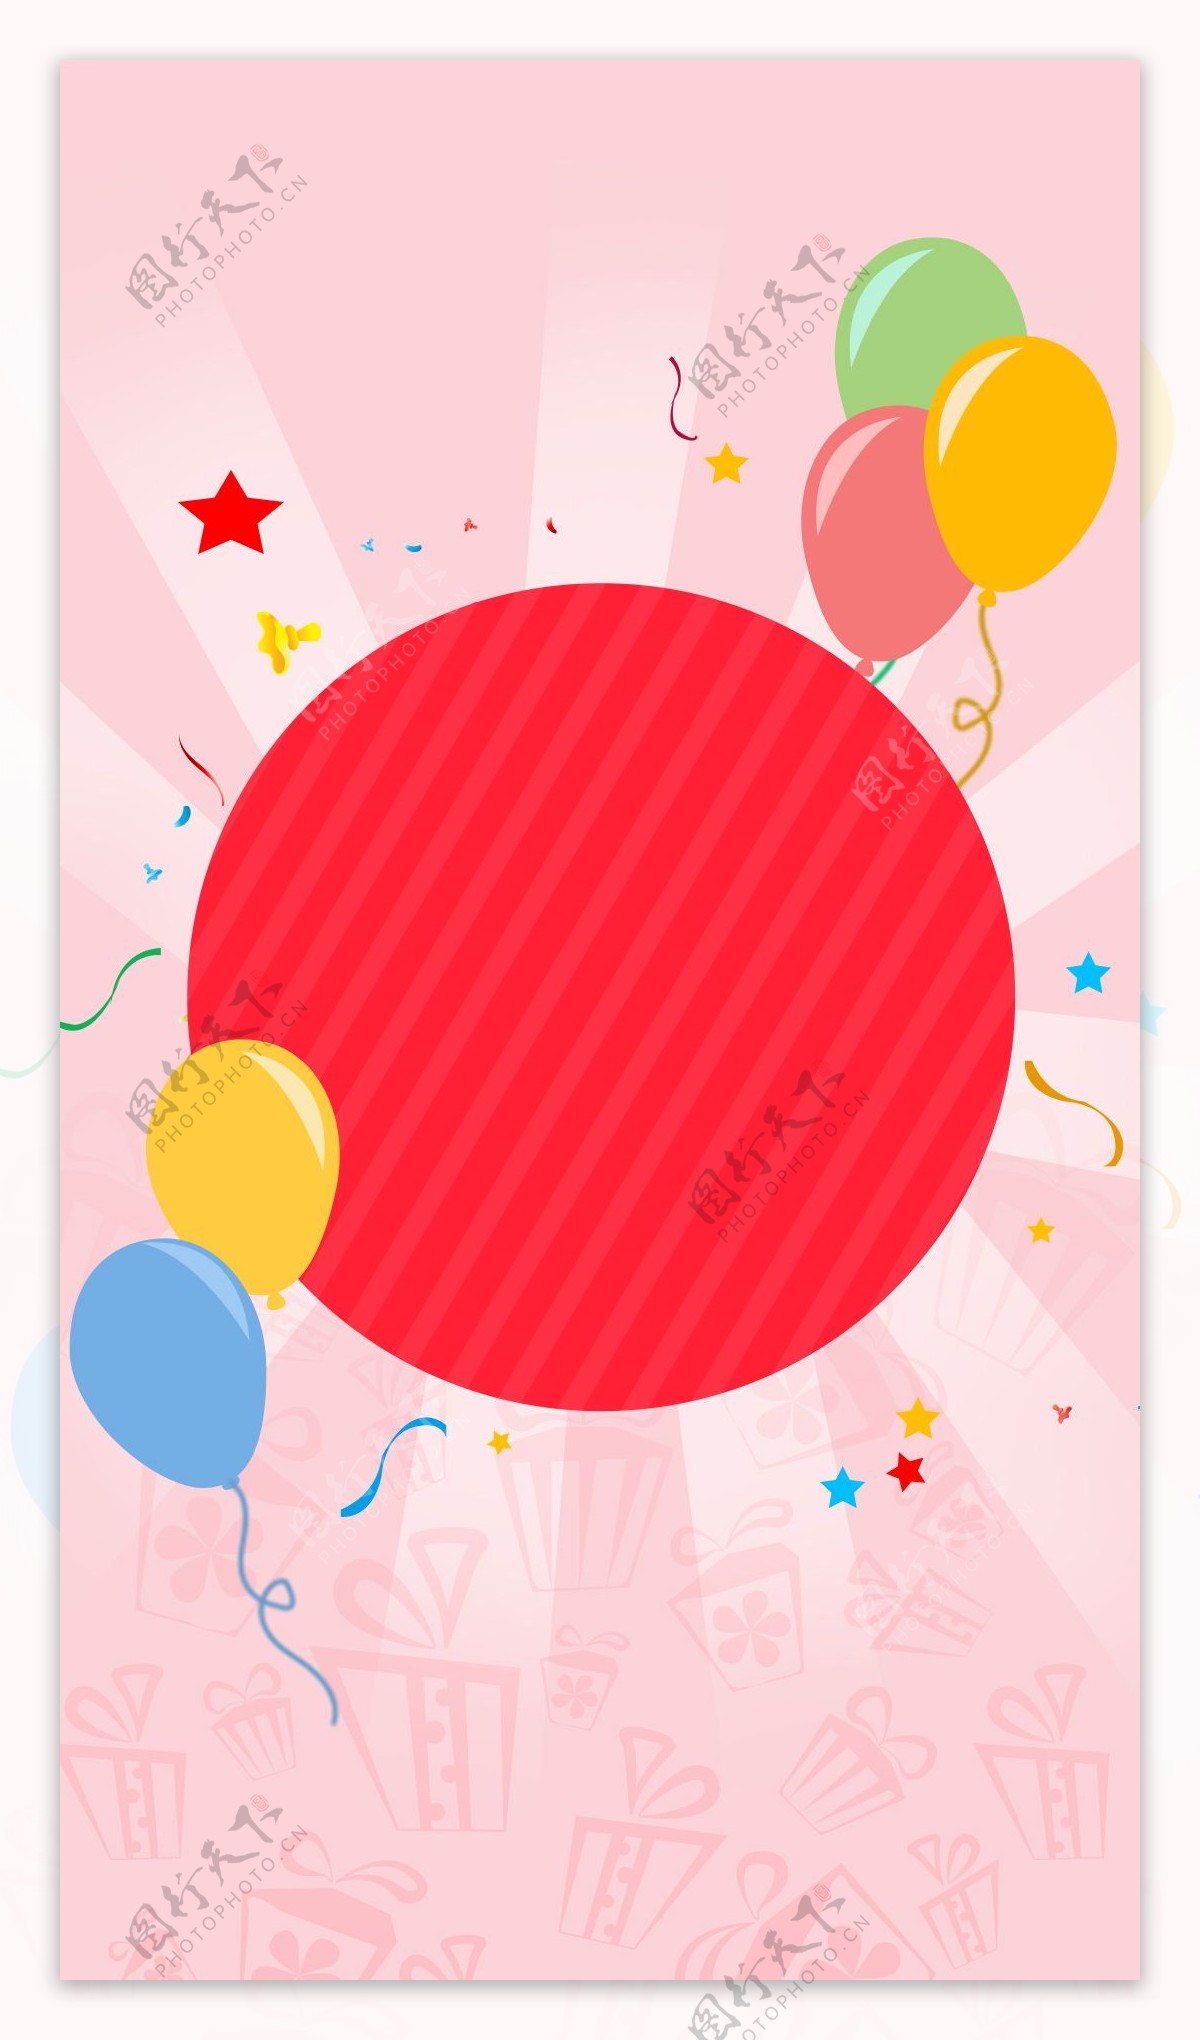 彩色气球礼盒H5背景素材